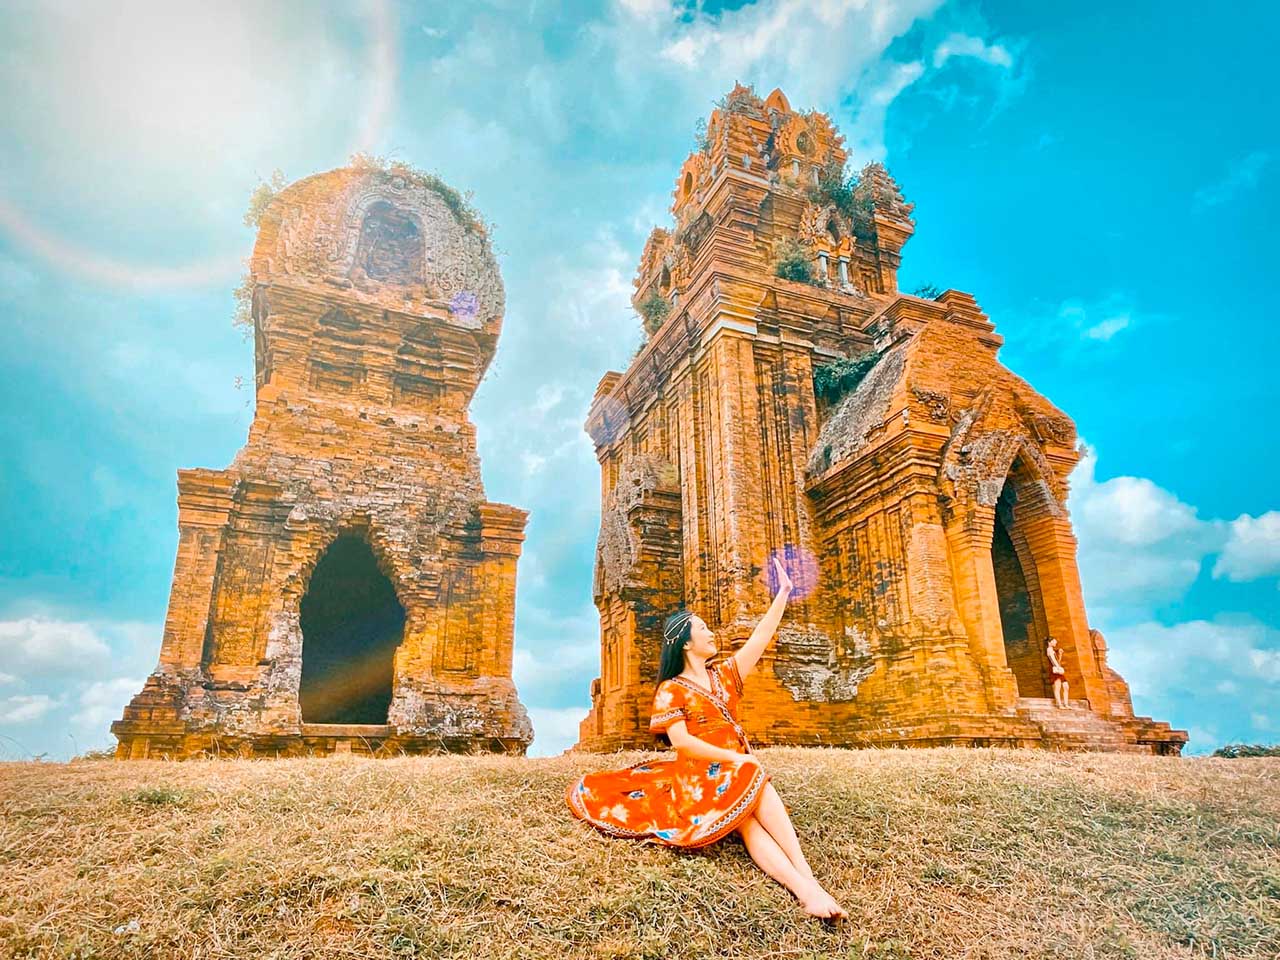 Chụp ảnh cực đẹp tại tháp Bánh Ít ở Quy Nhơn Bình Định